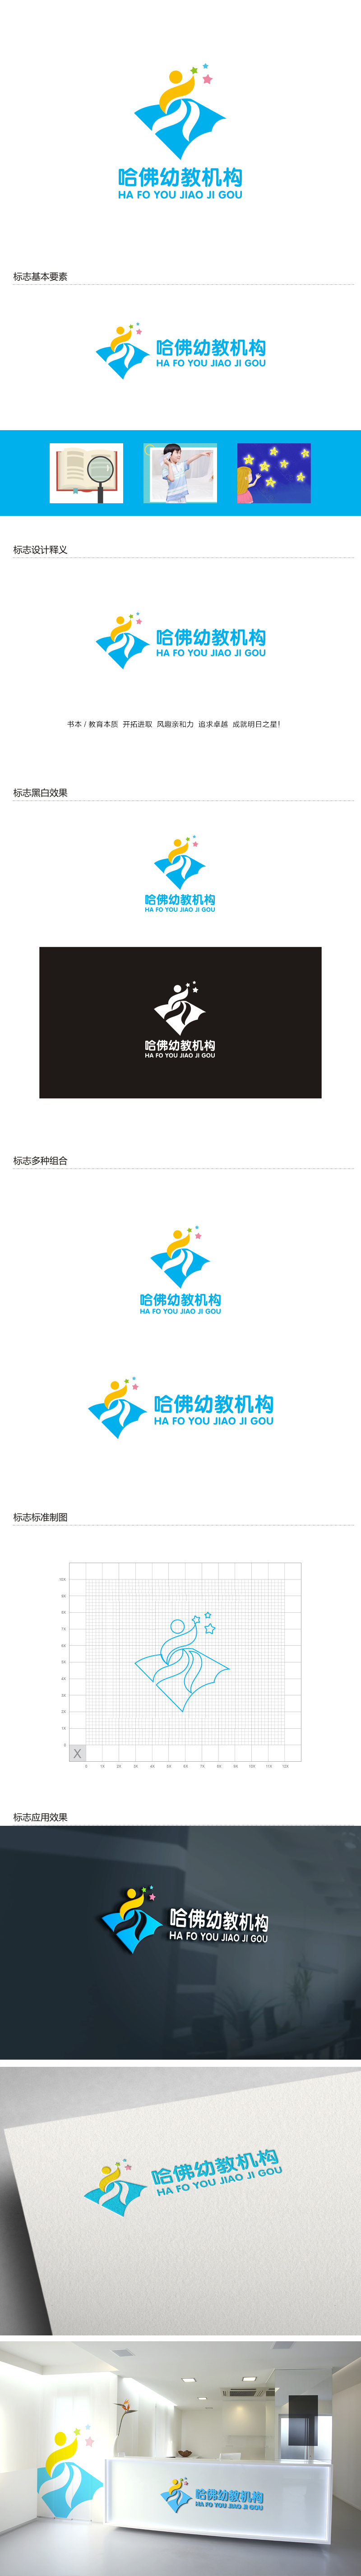 杨勇的哈佛幼教机构logo设计